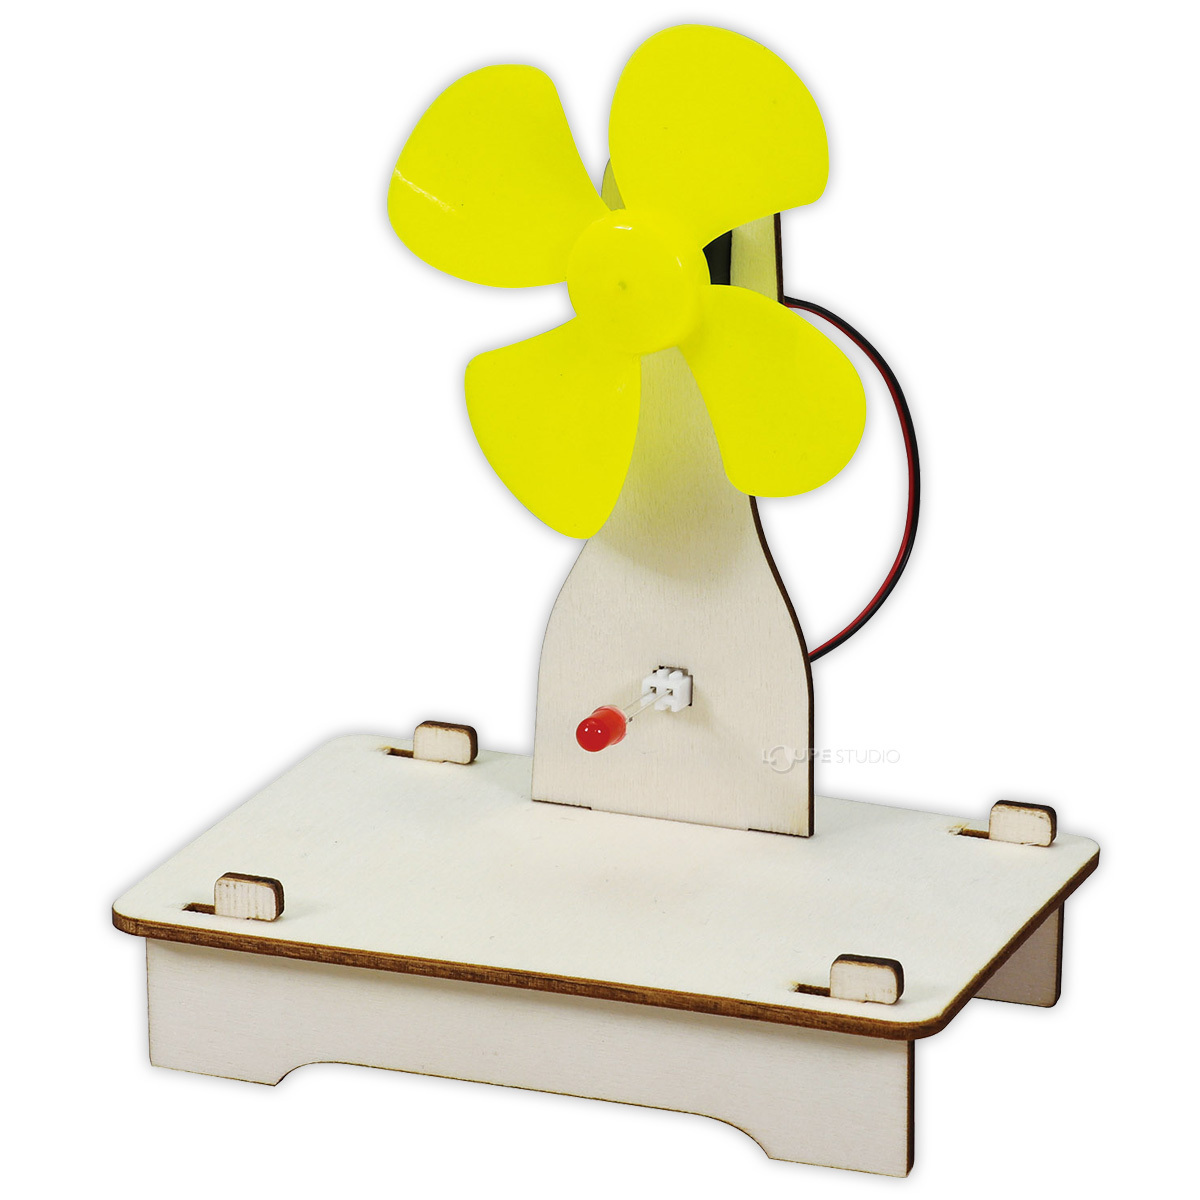 実験 工作 キット 小学生 風力発電組立キット LED 手作り 理科 科学 ...